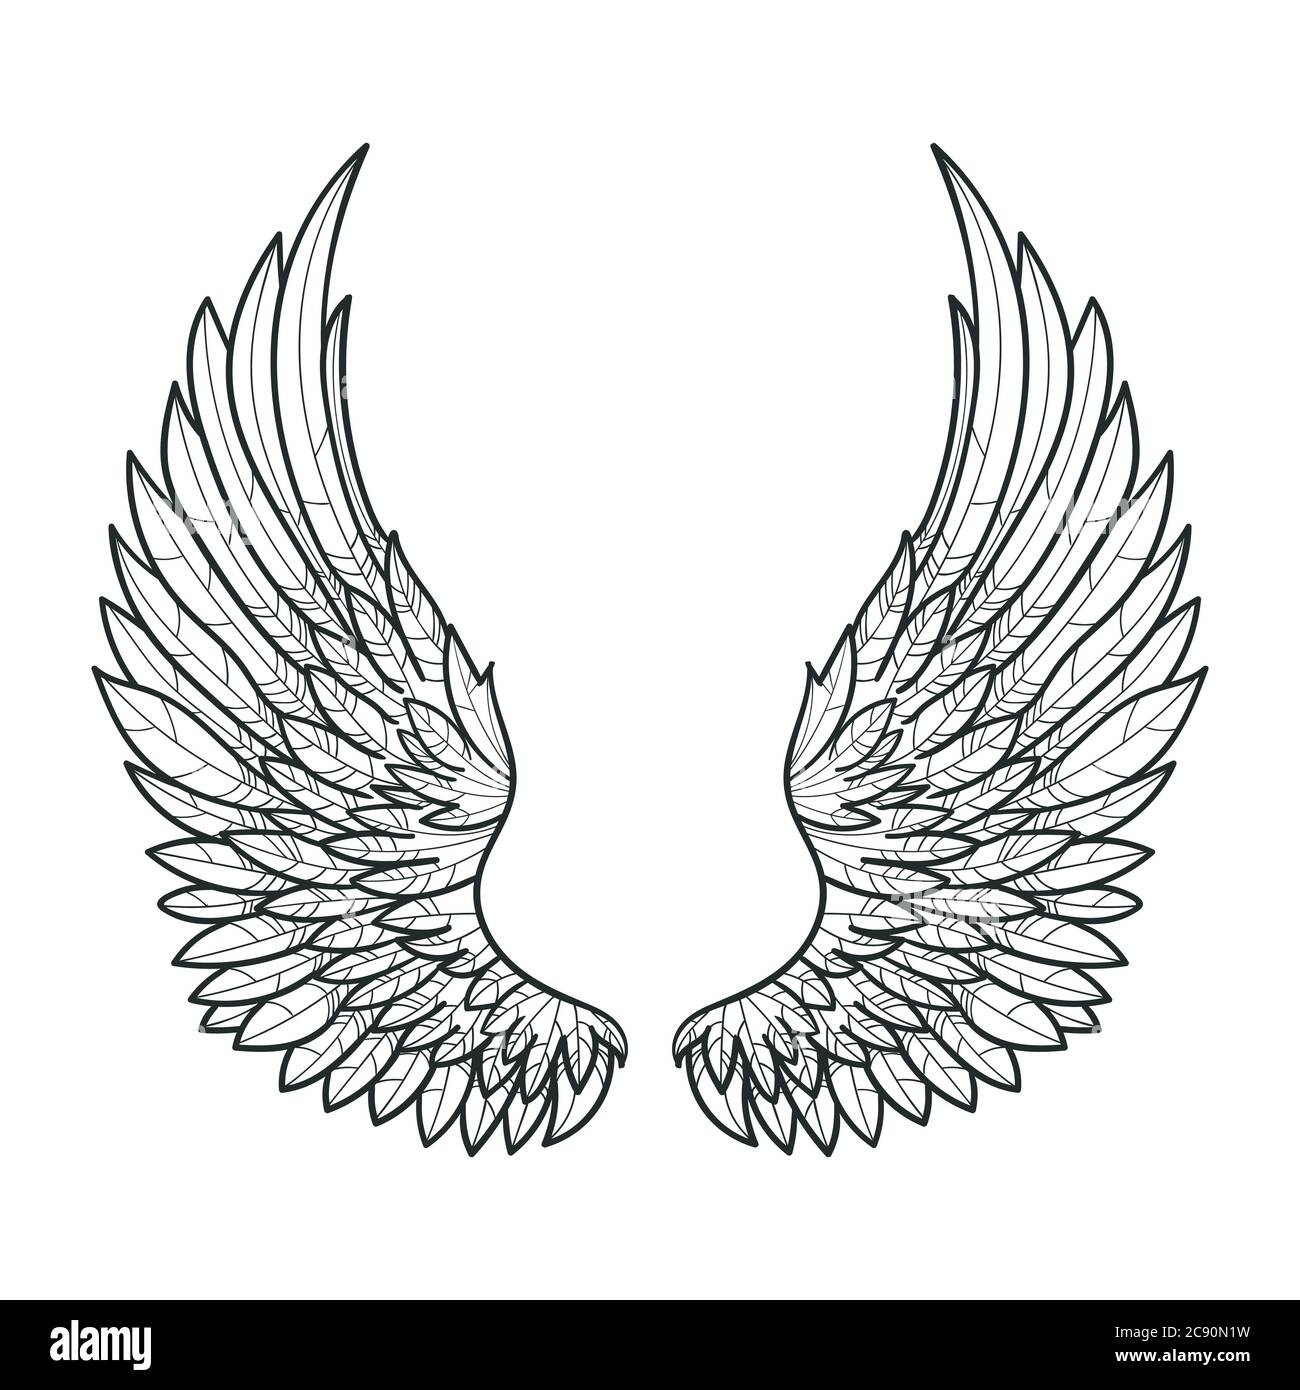 Ein Paar Vogelflügel. Von Hand gezeichnet. Schwarz und Weiß. Für Drucke. Poster, Tattoos. Vektor Stock Vektor